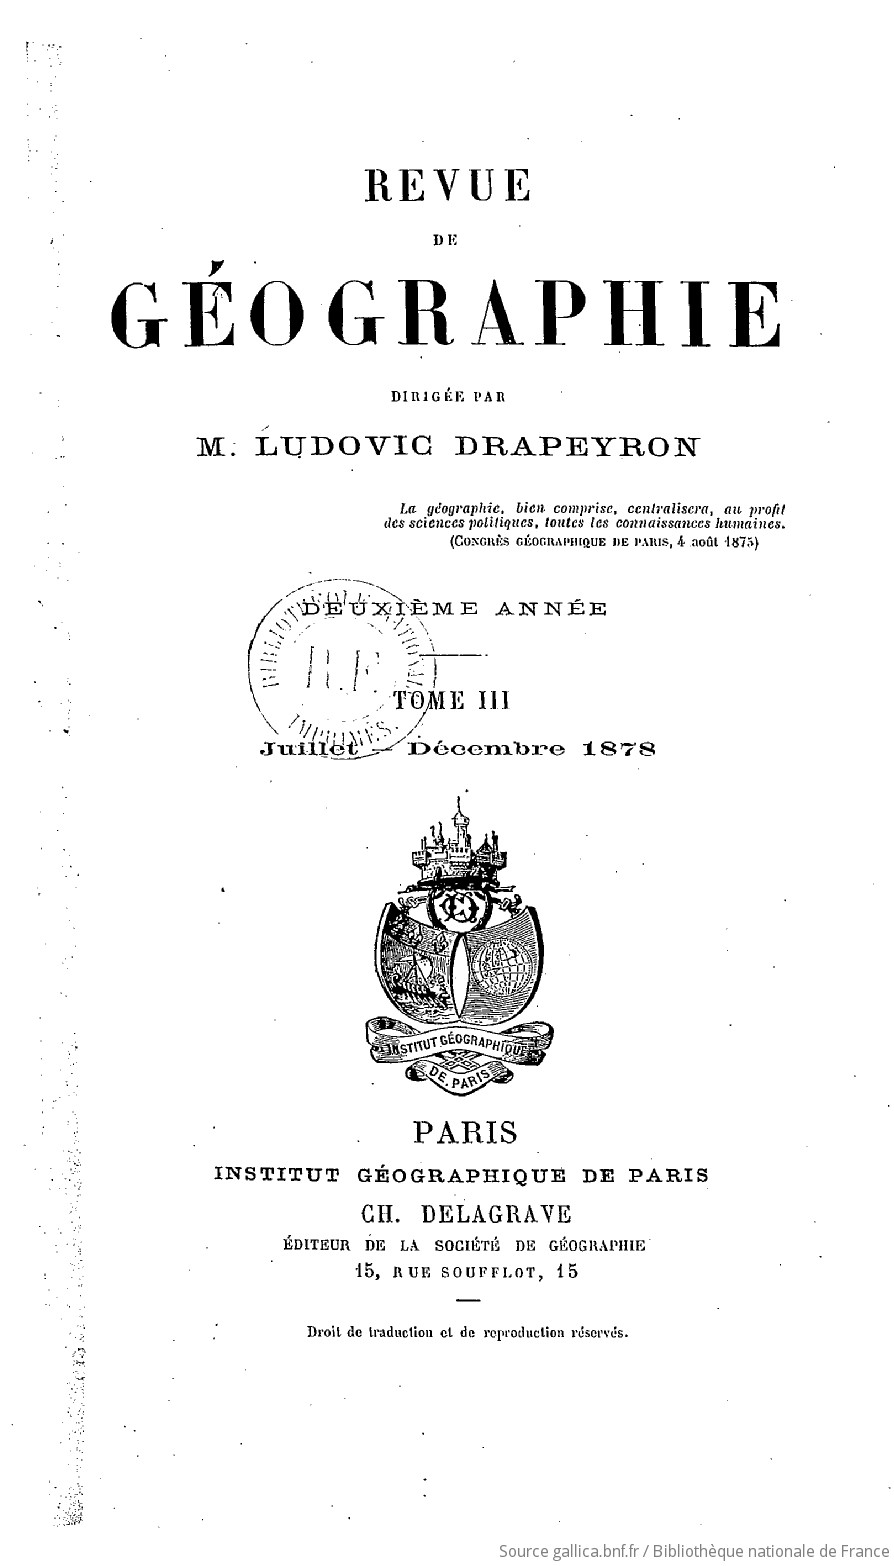 Revue de géographie / dirigée par M. Ludovic Drapeyron